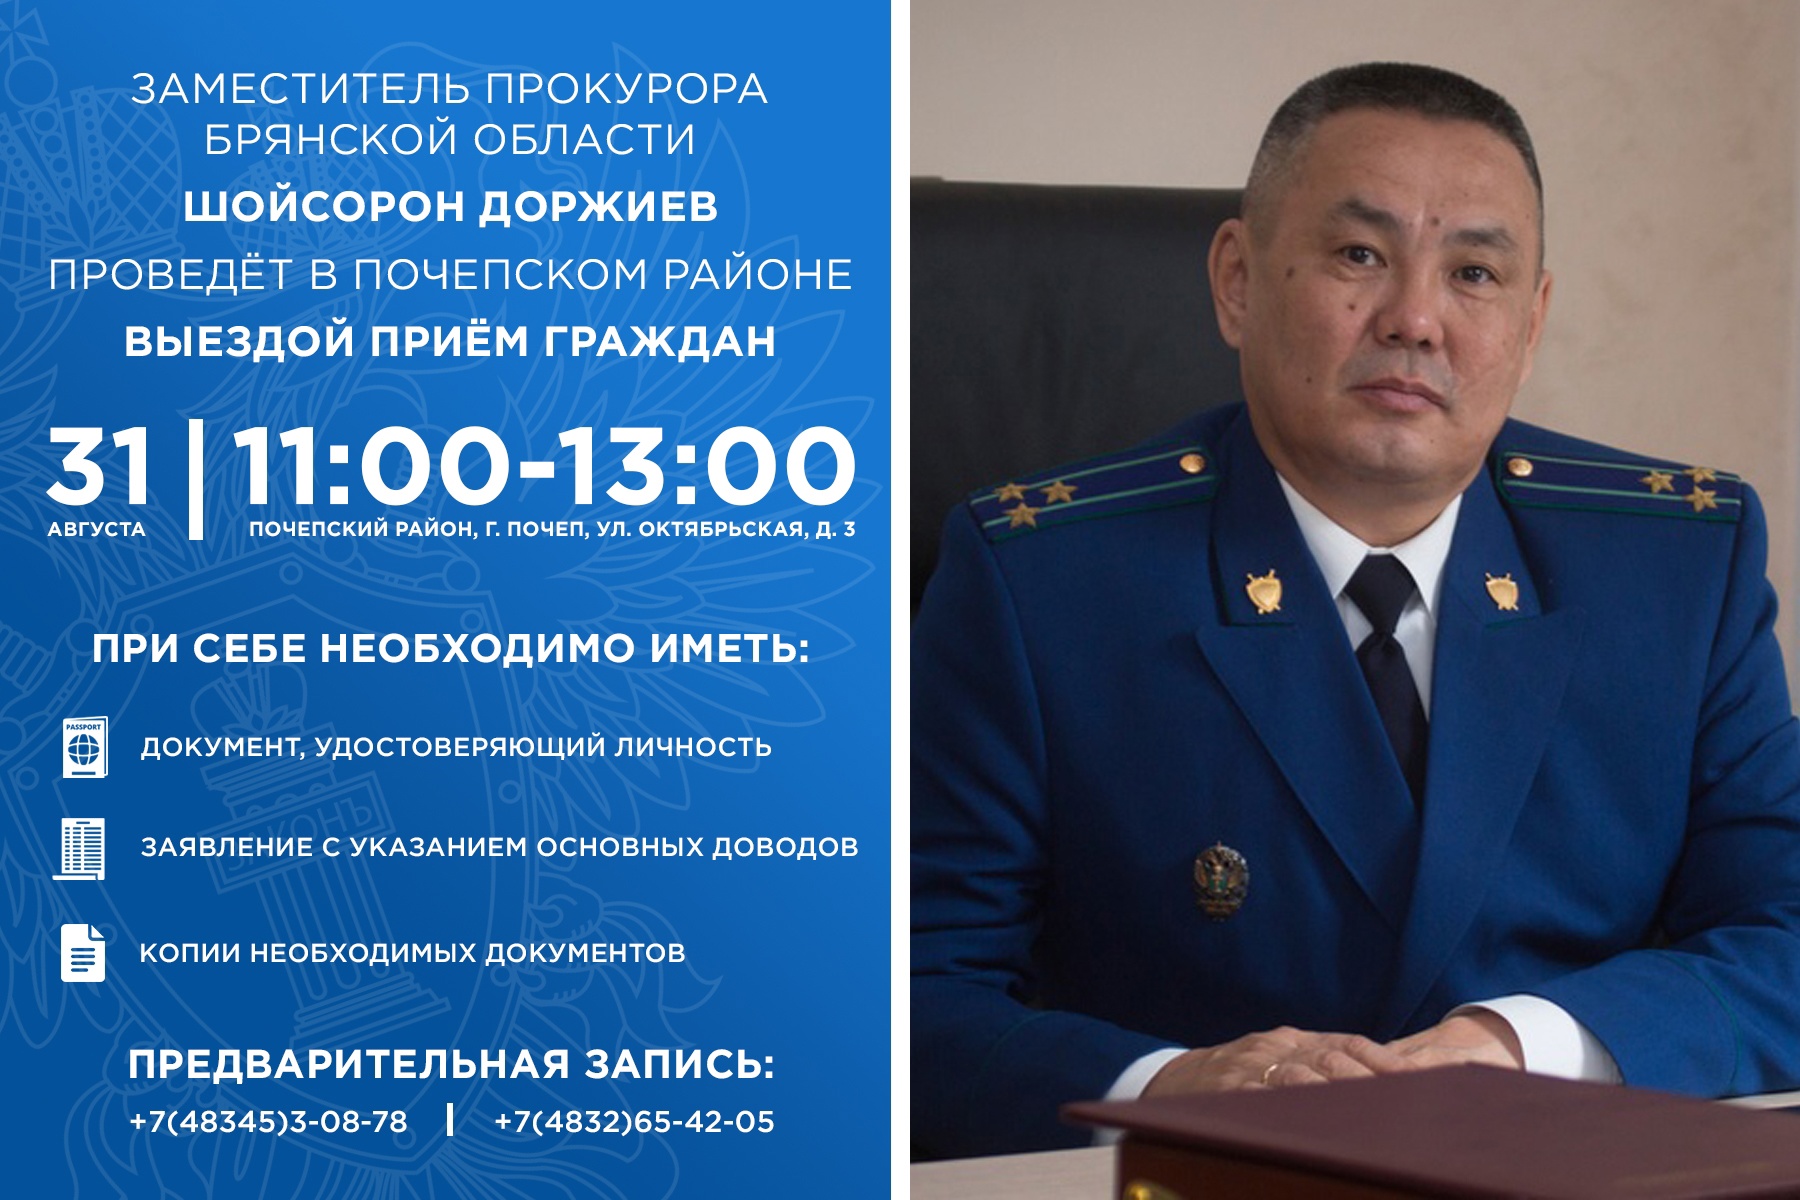 Заместитель прокурора Брянской области проведет выездной прием граждан в Почепском районе